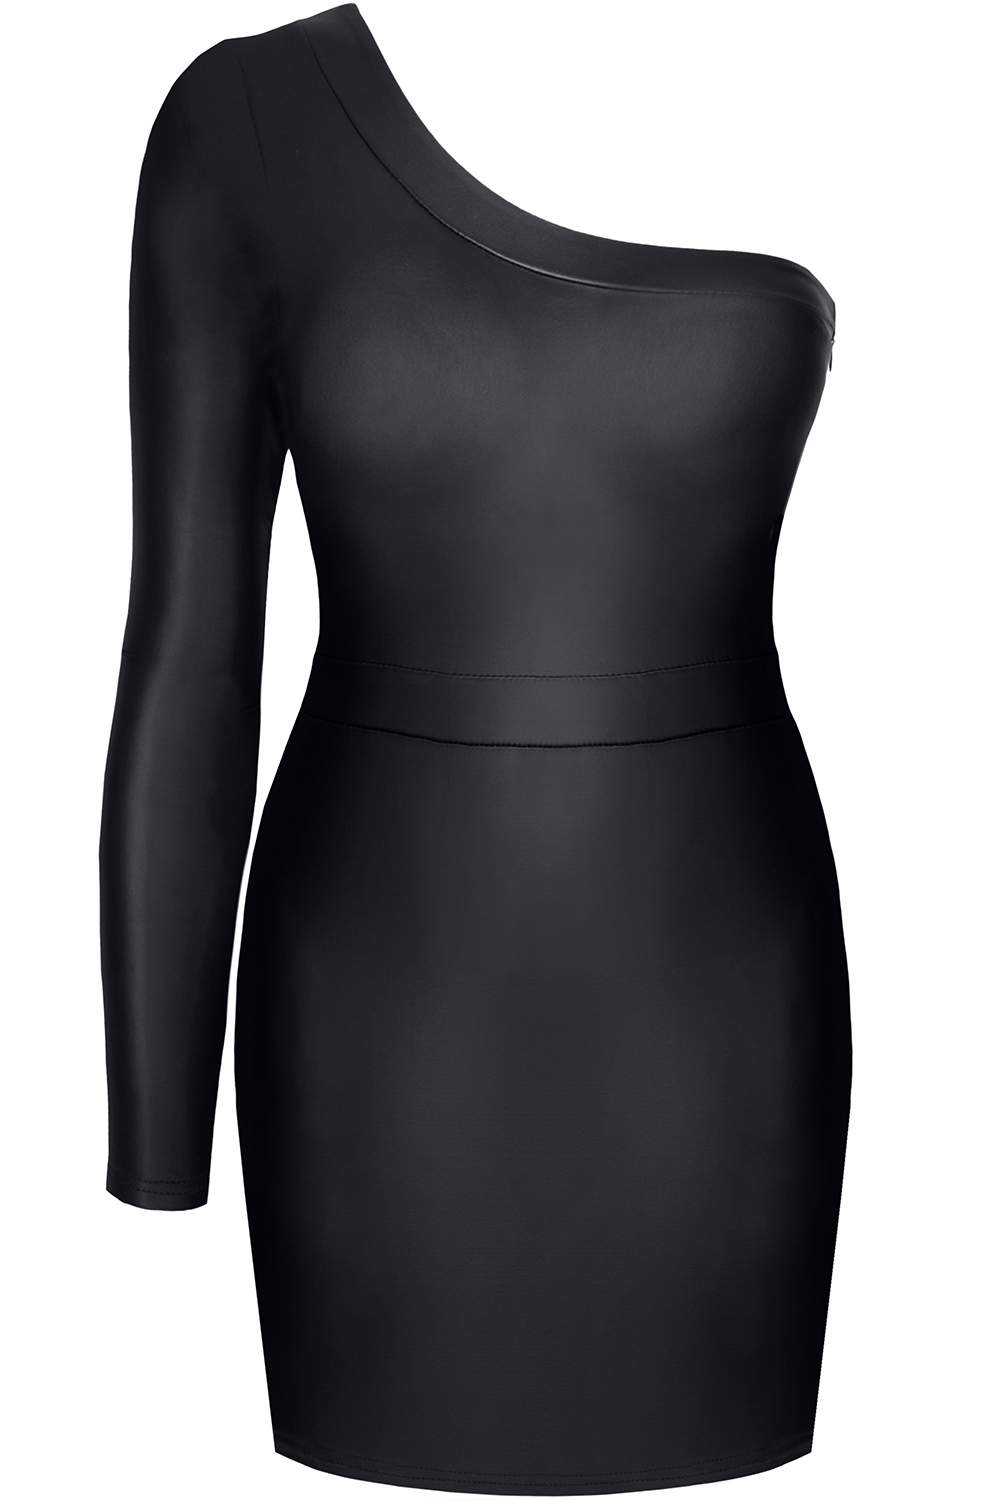 Krótka, asymetryczna sukienka z czarnego, elastycznego materiału Demoniq Felicia